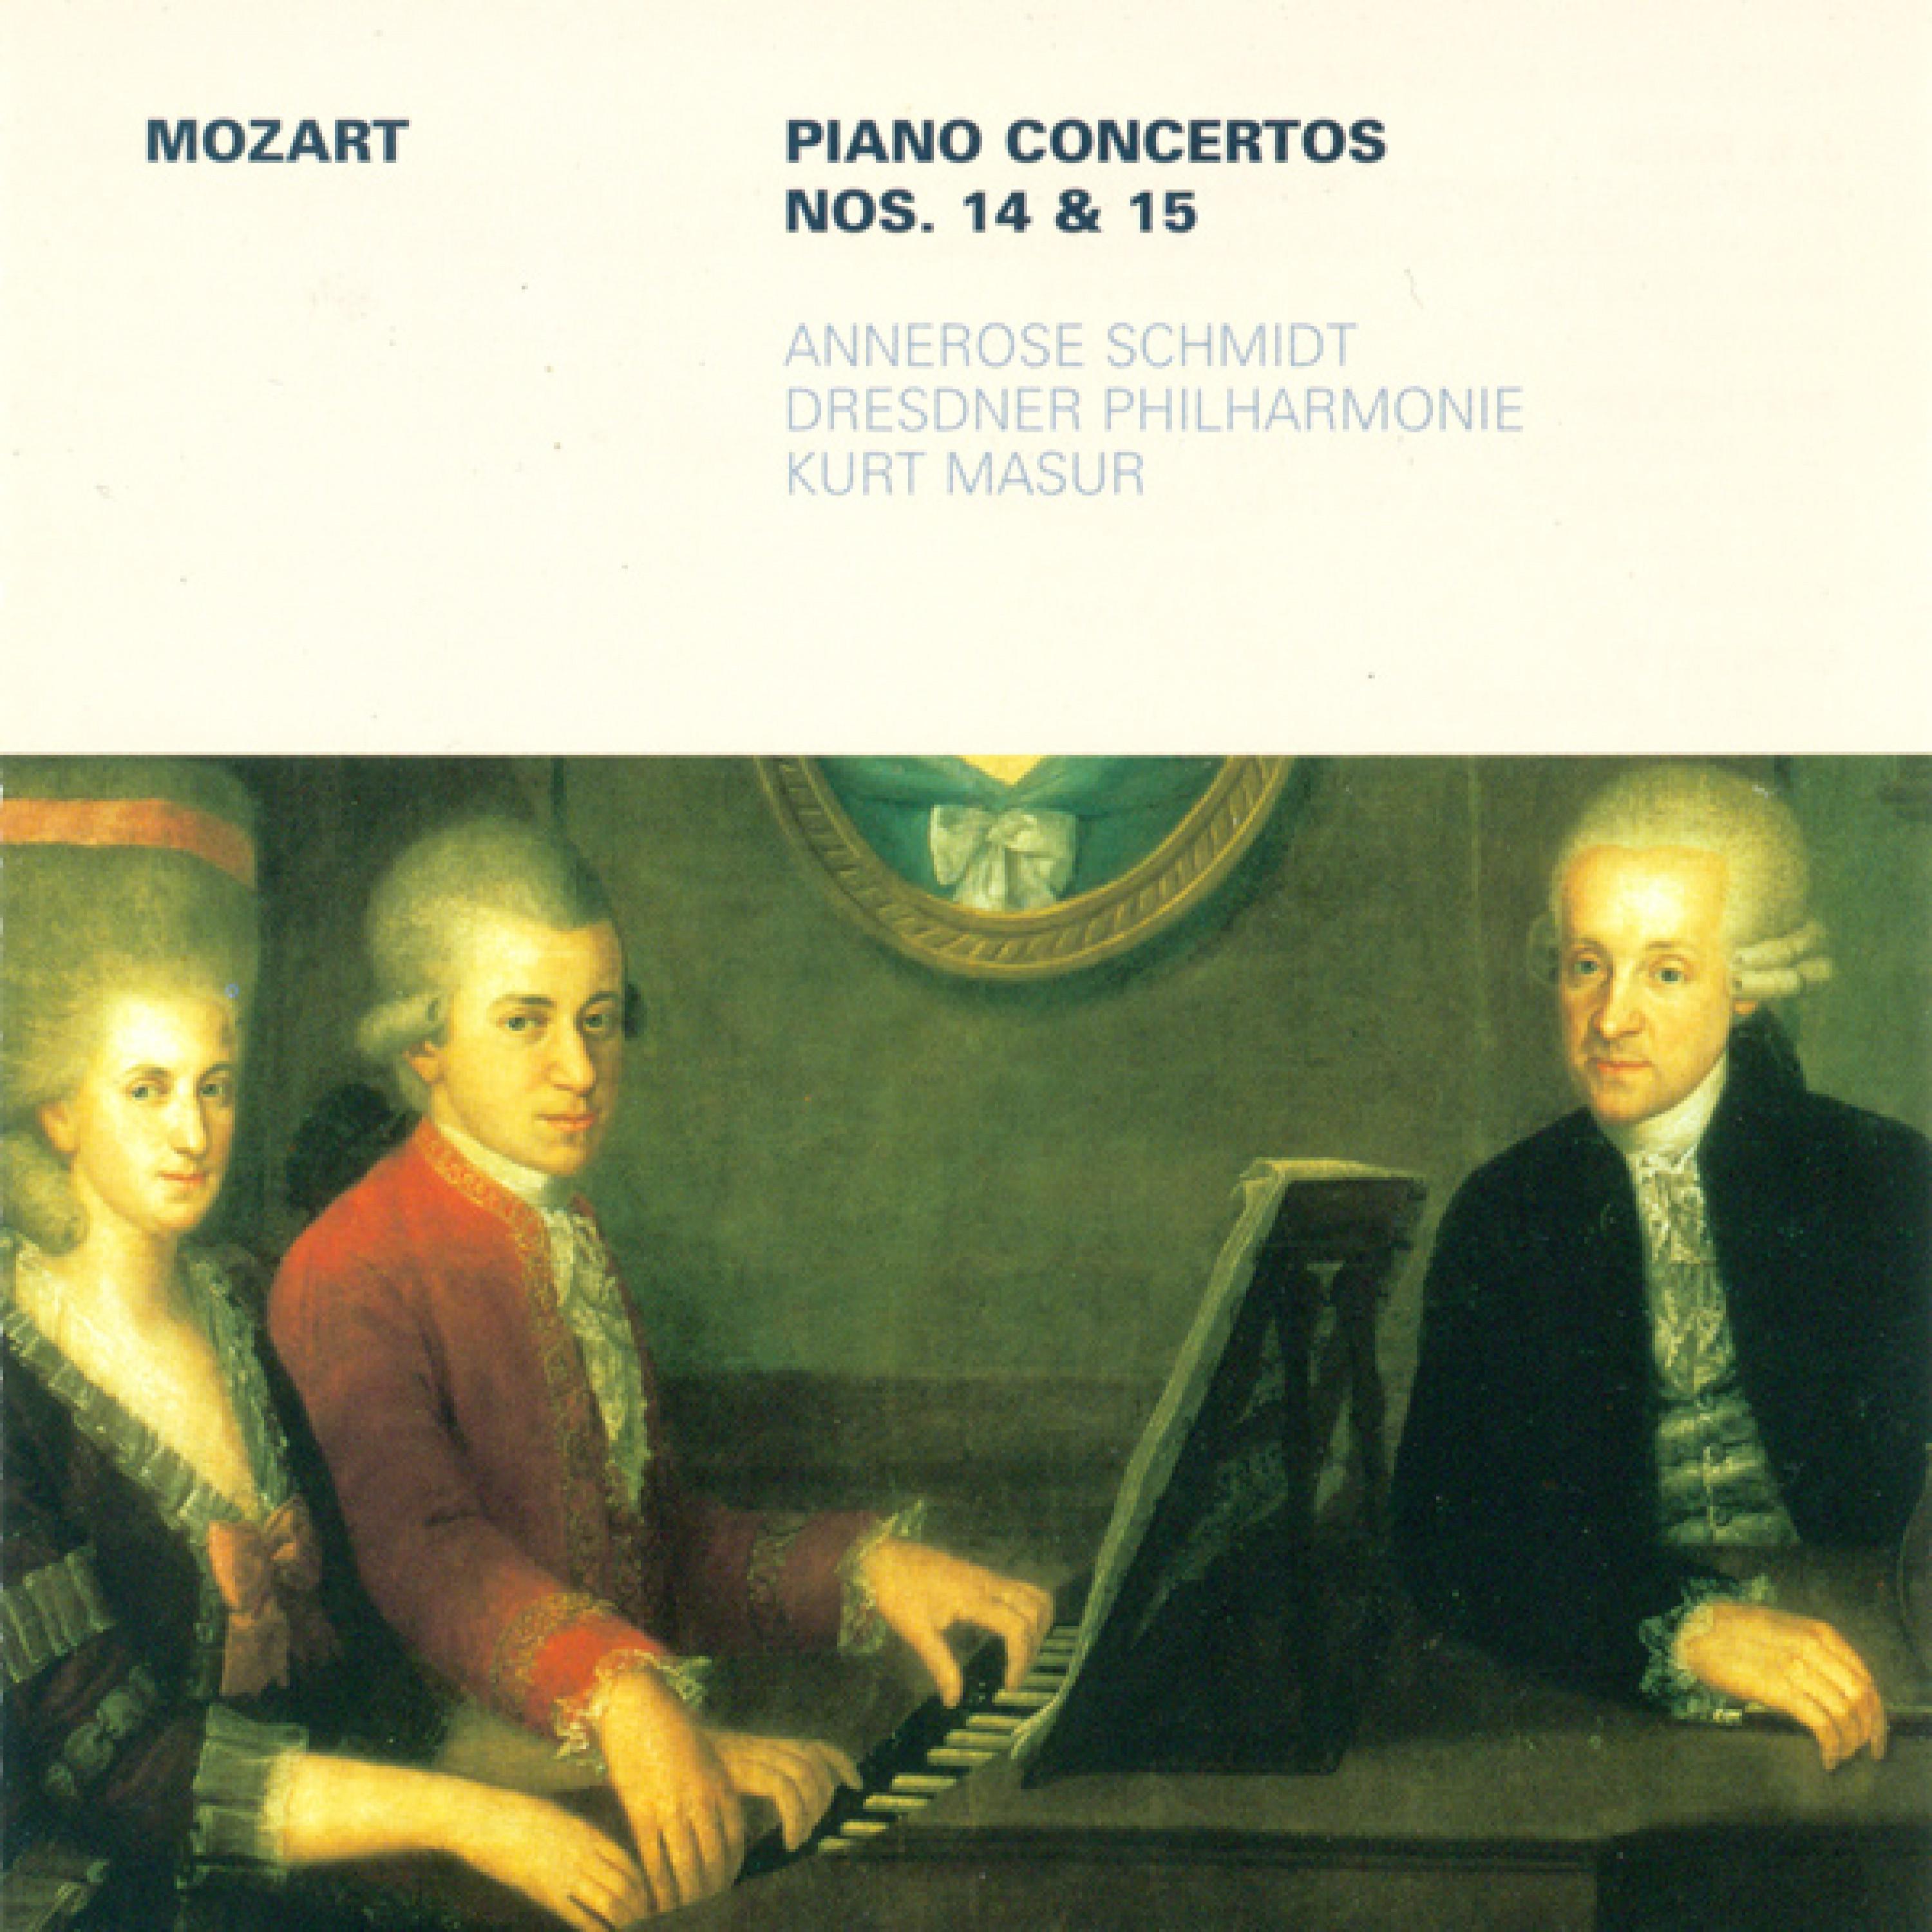 Piano Concerto No. 14 in E-Flat Major, K. 449: III. Allegro ma non troppo